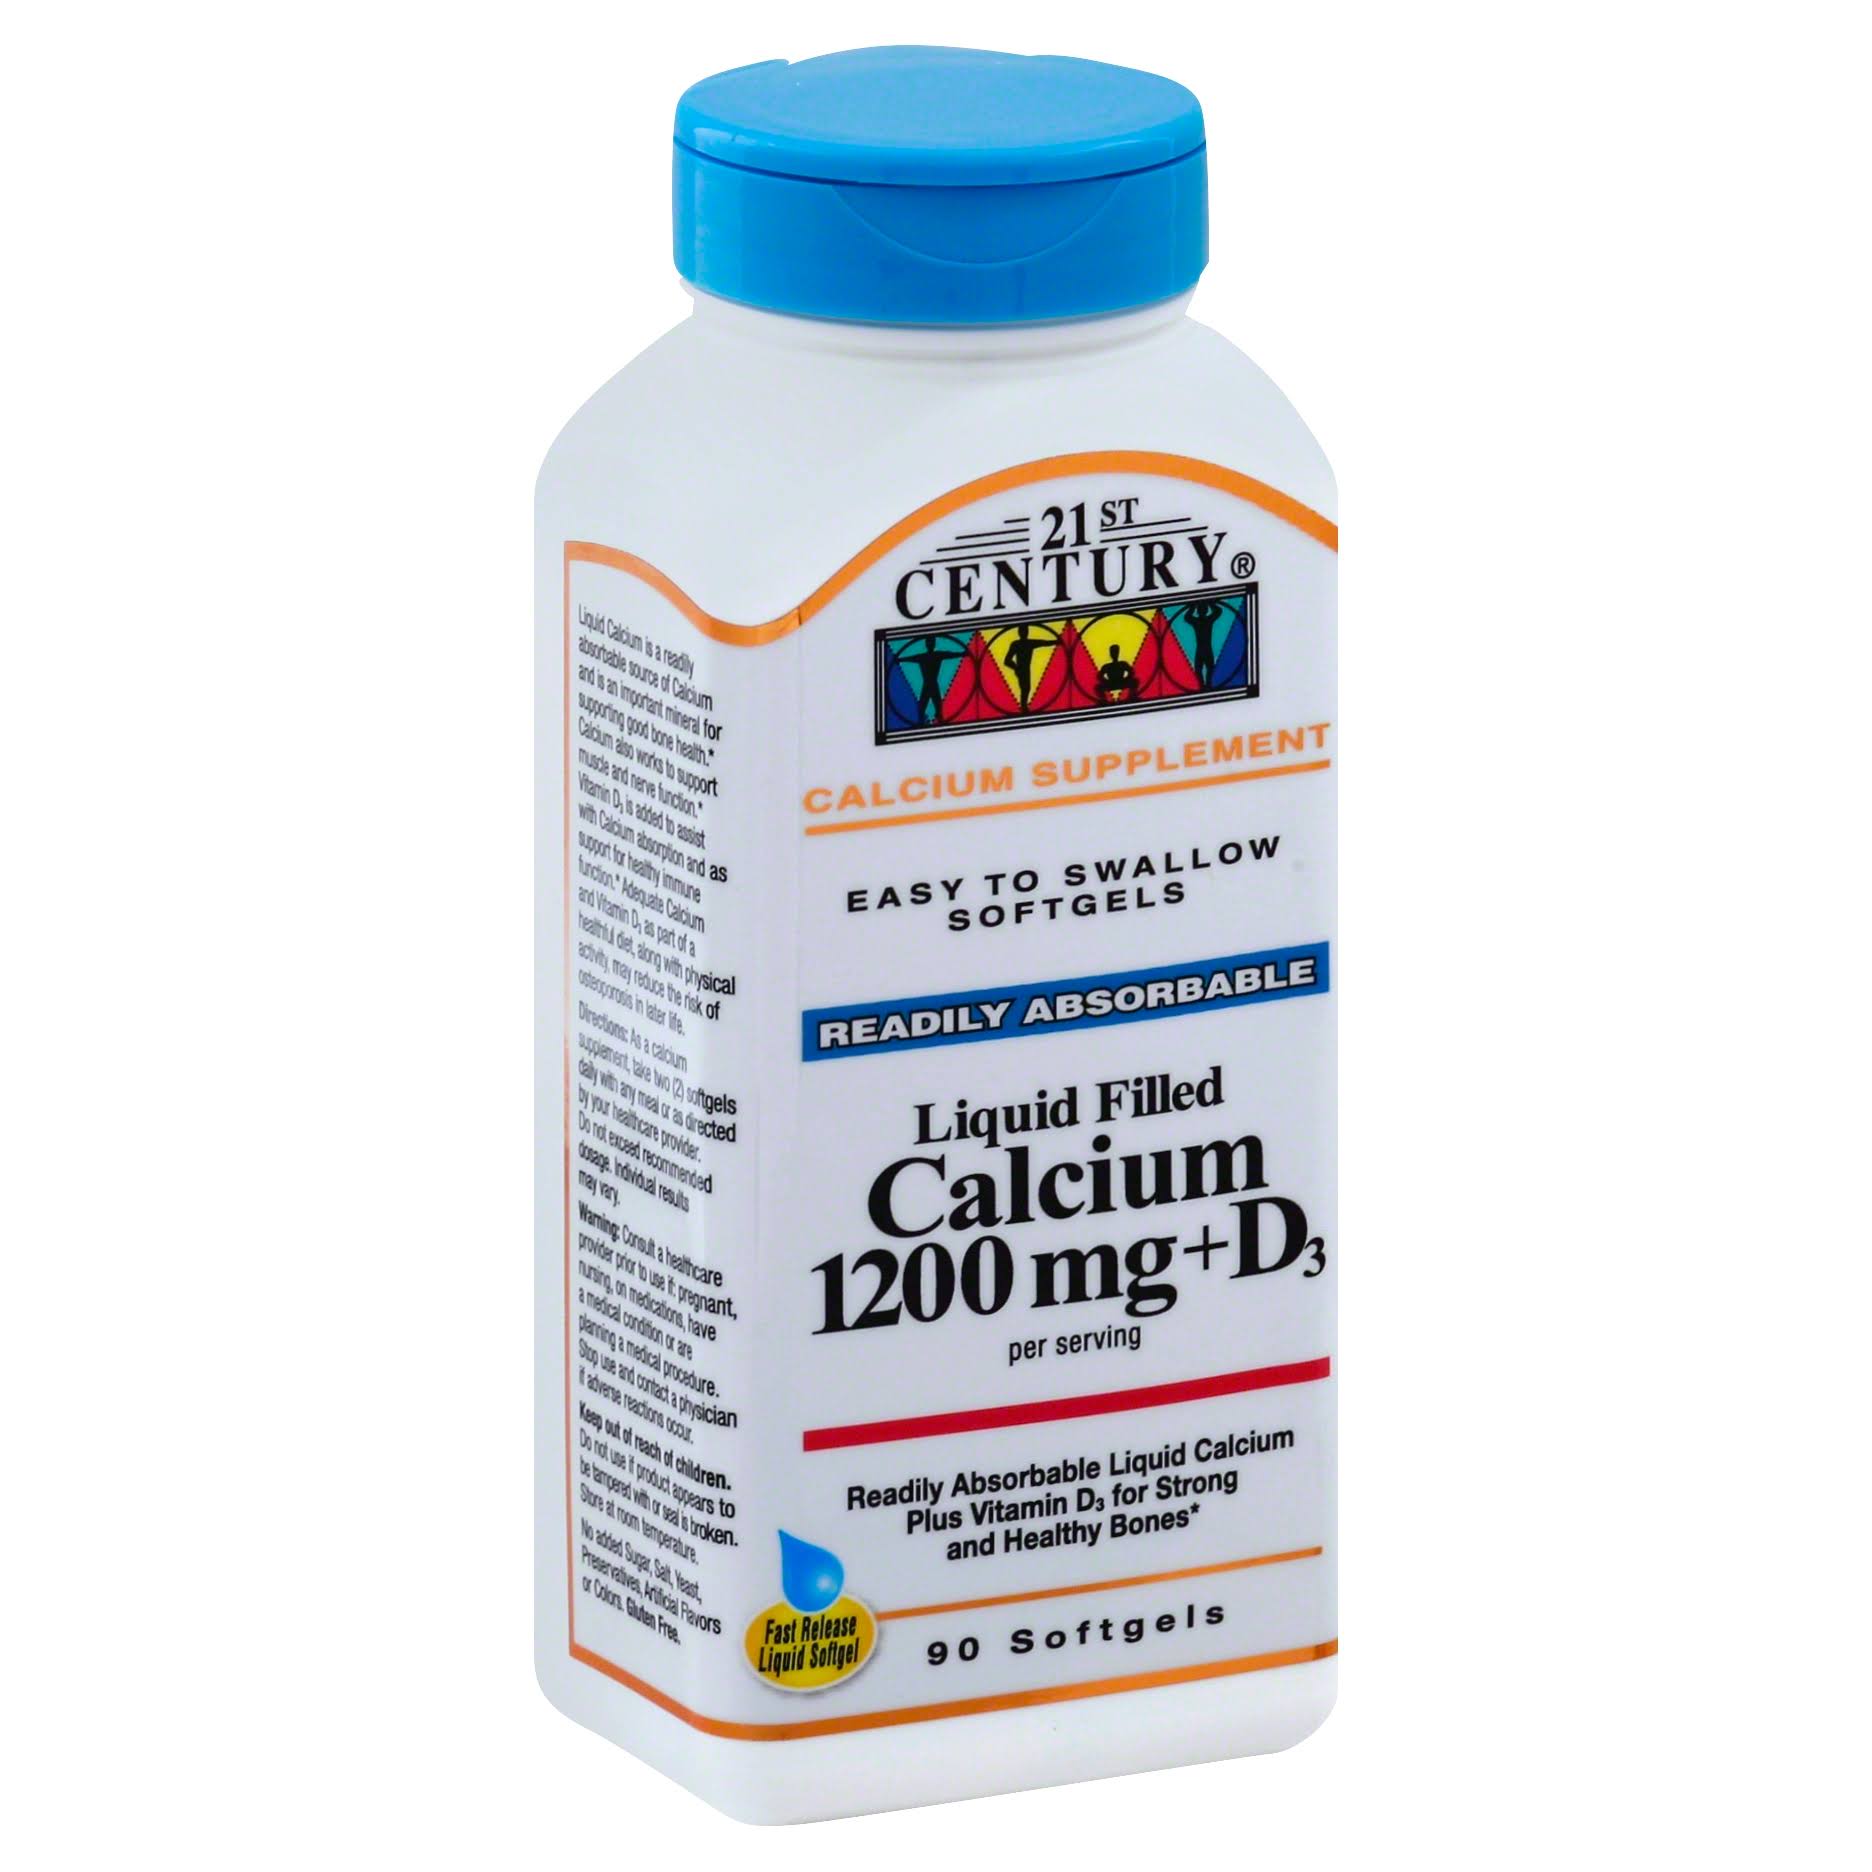 21st Century Calcium + D3, 1200 mg, Softgels - 90 softgels